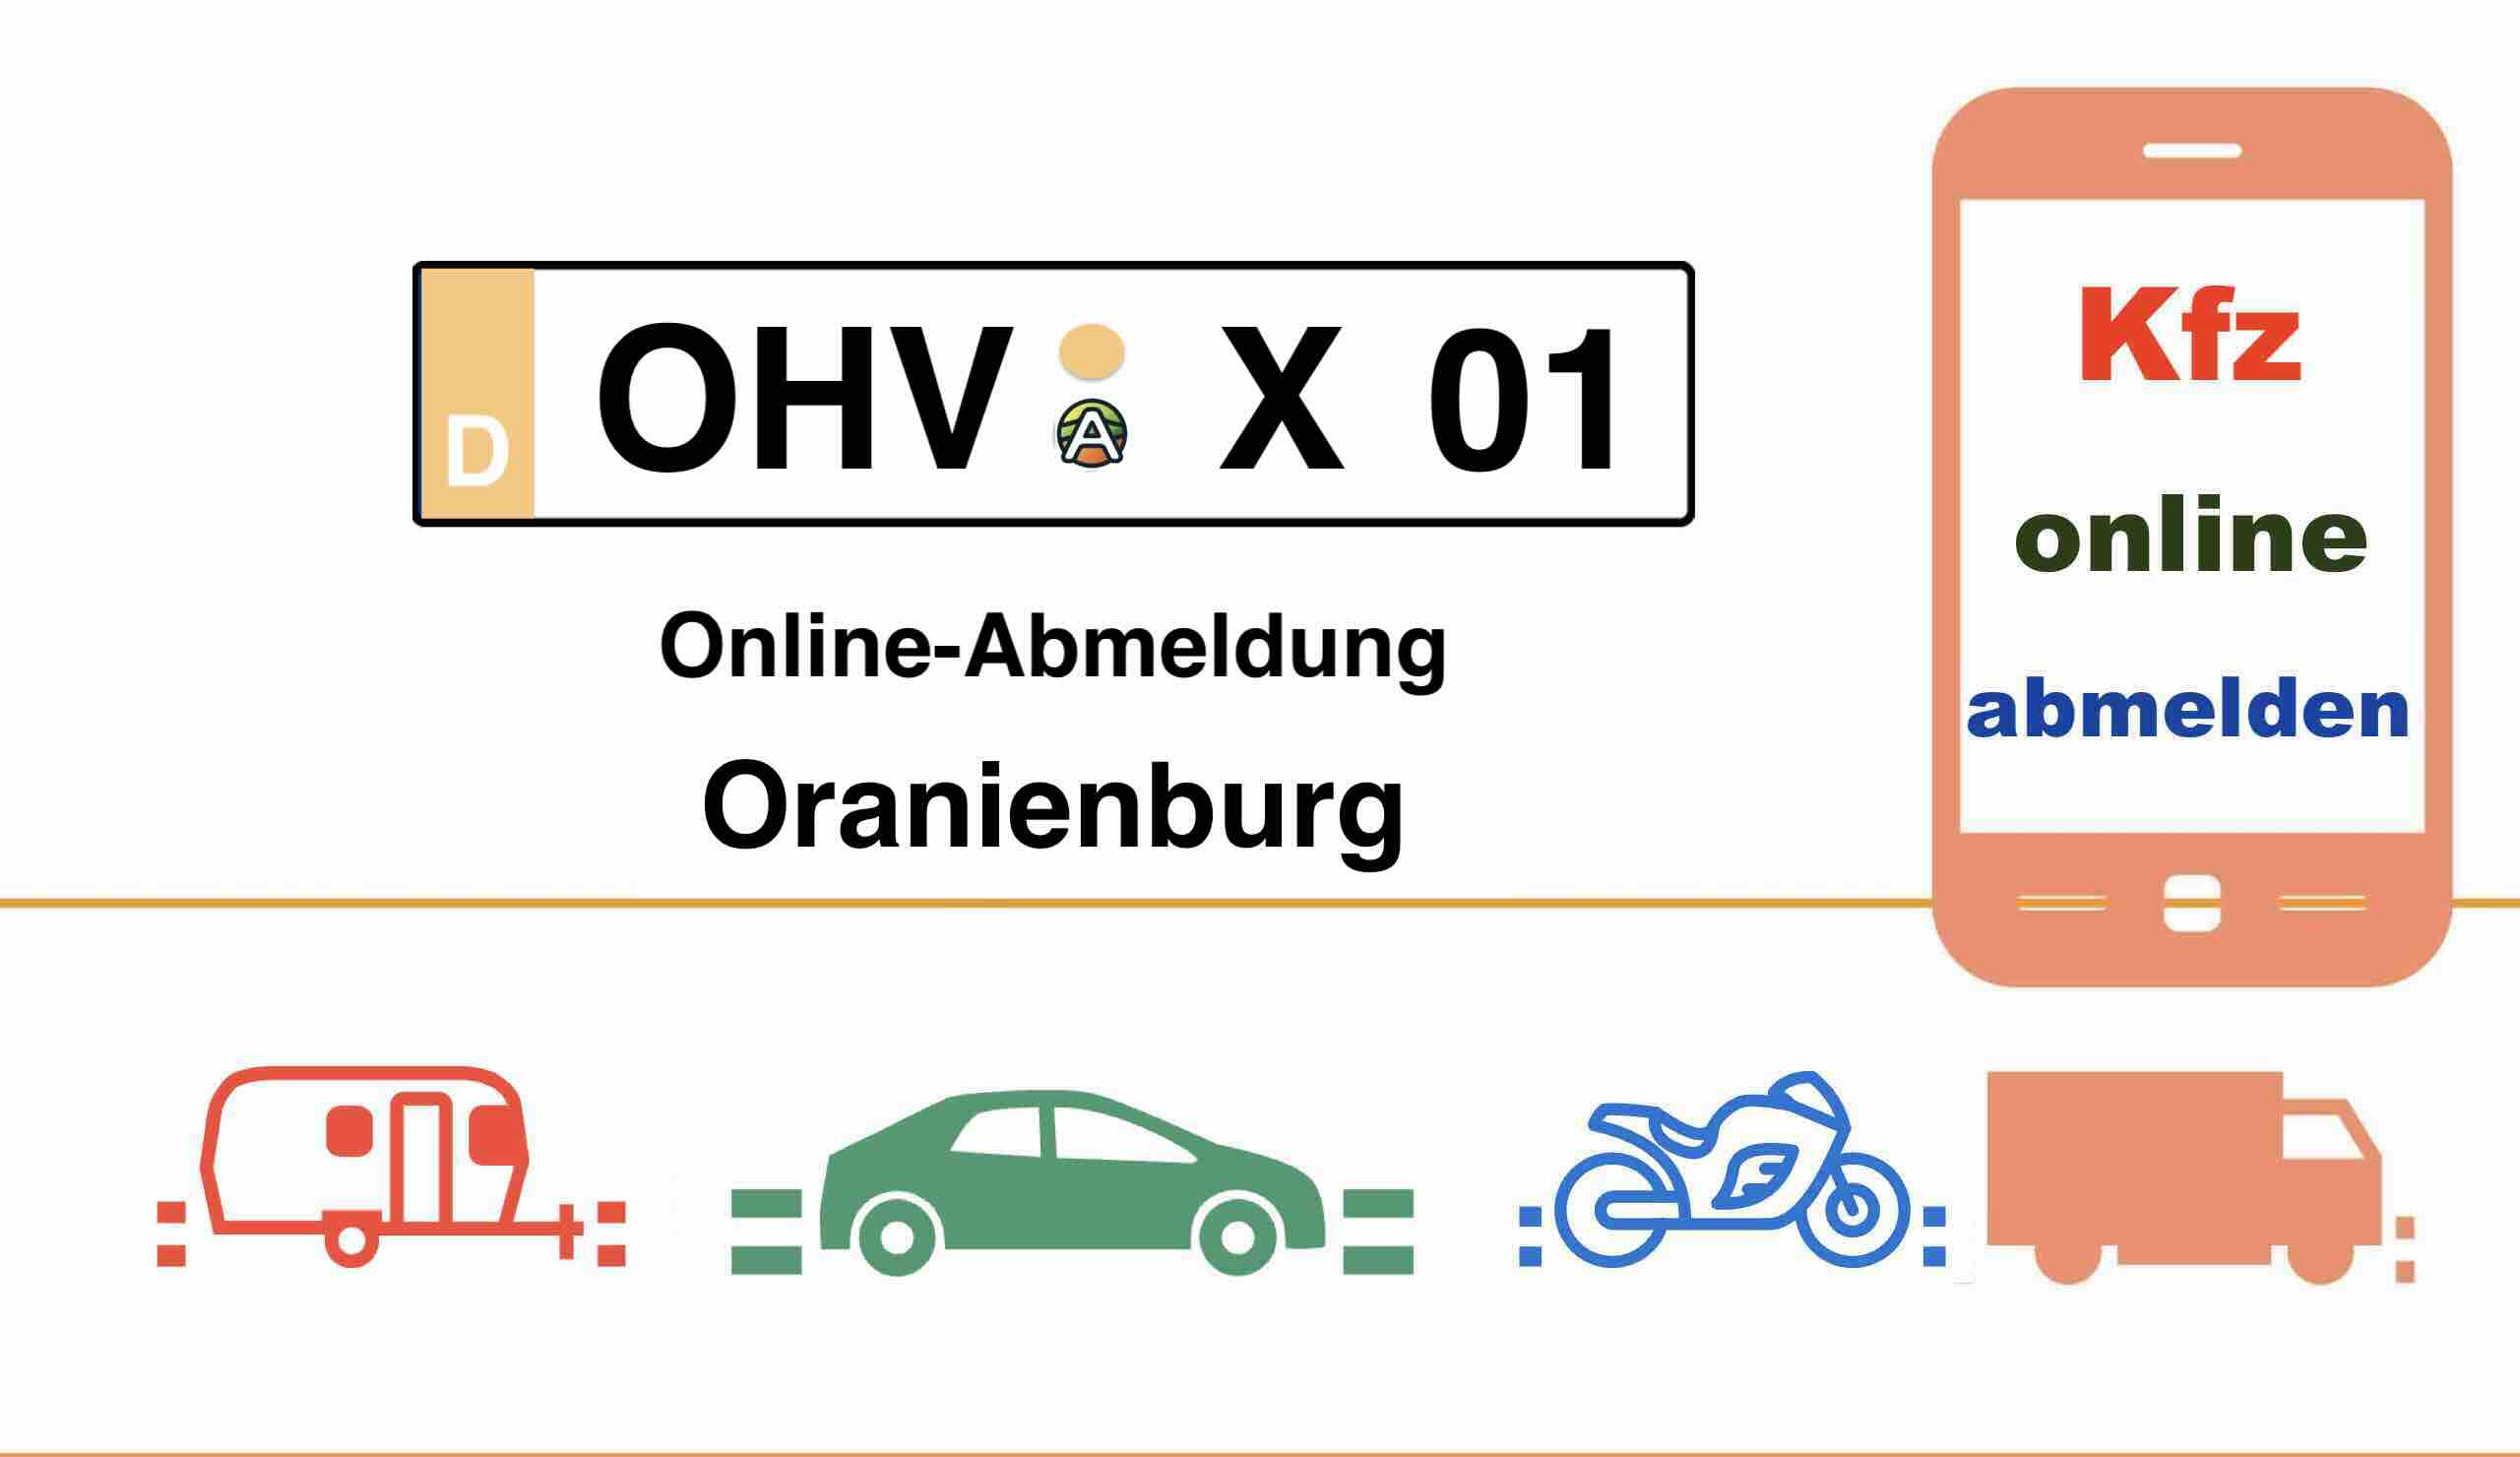 Online-Abmeldung im Landkreis Oberhavel